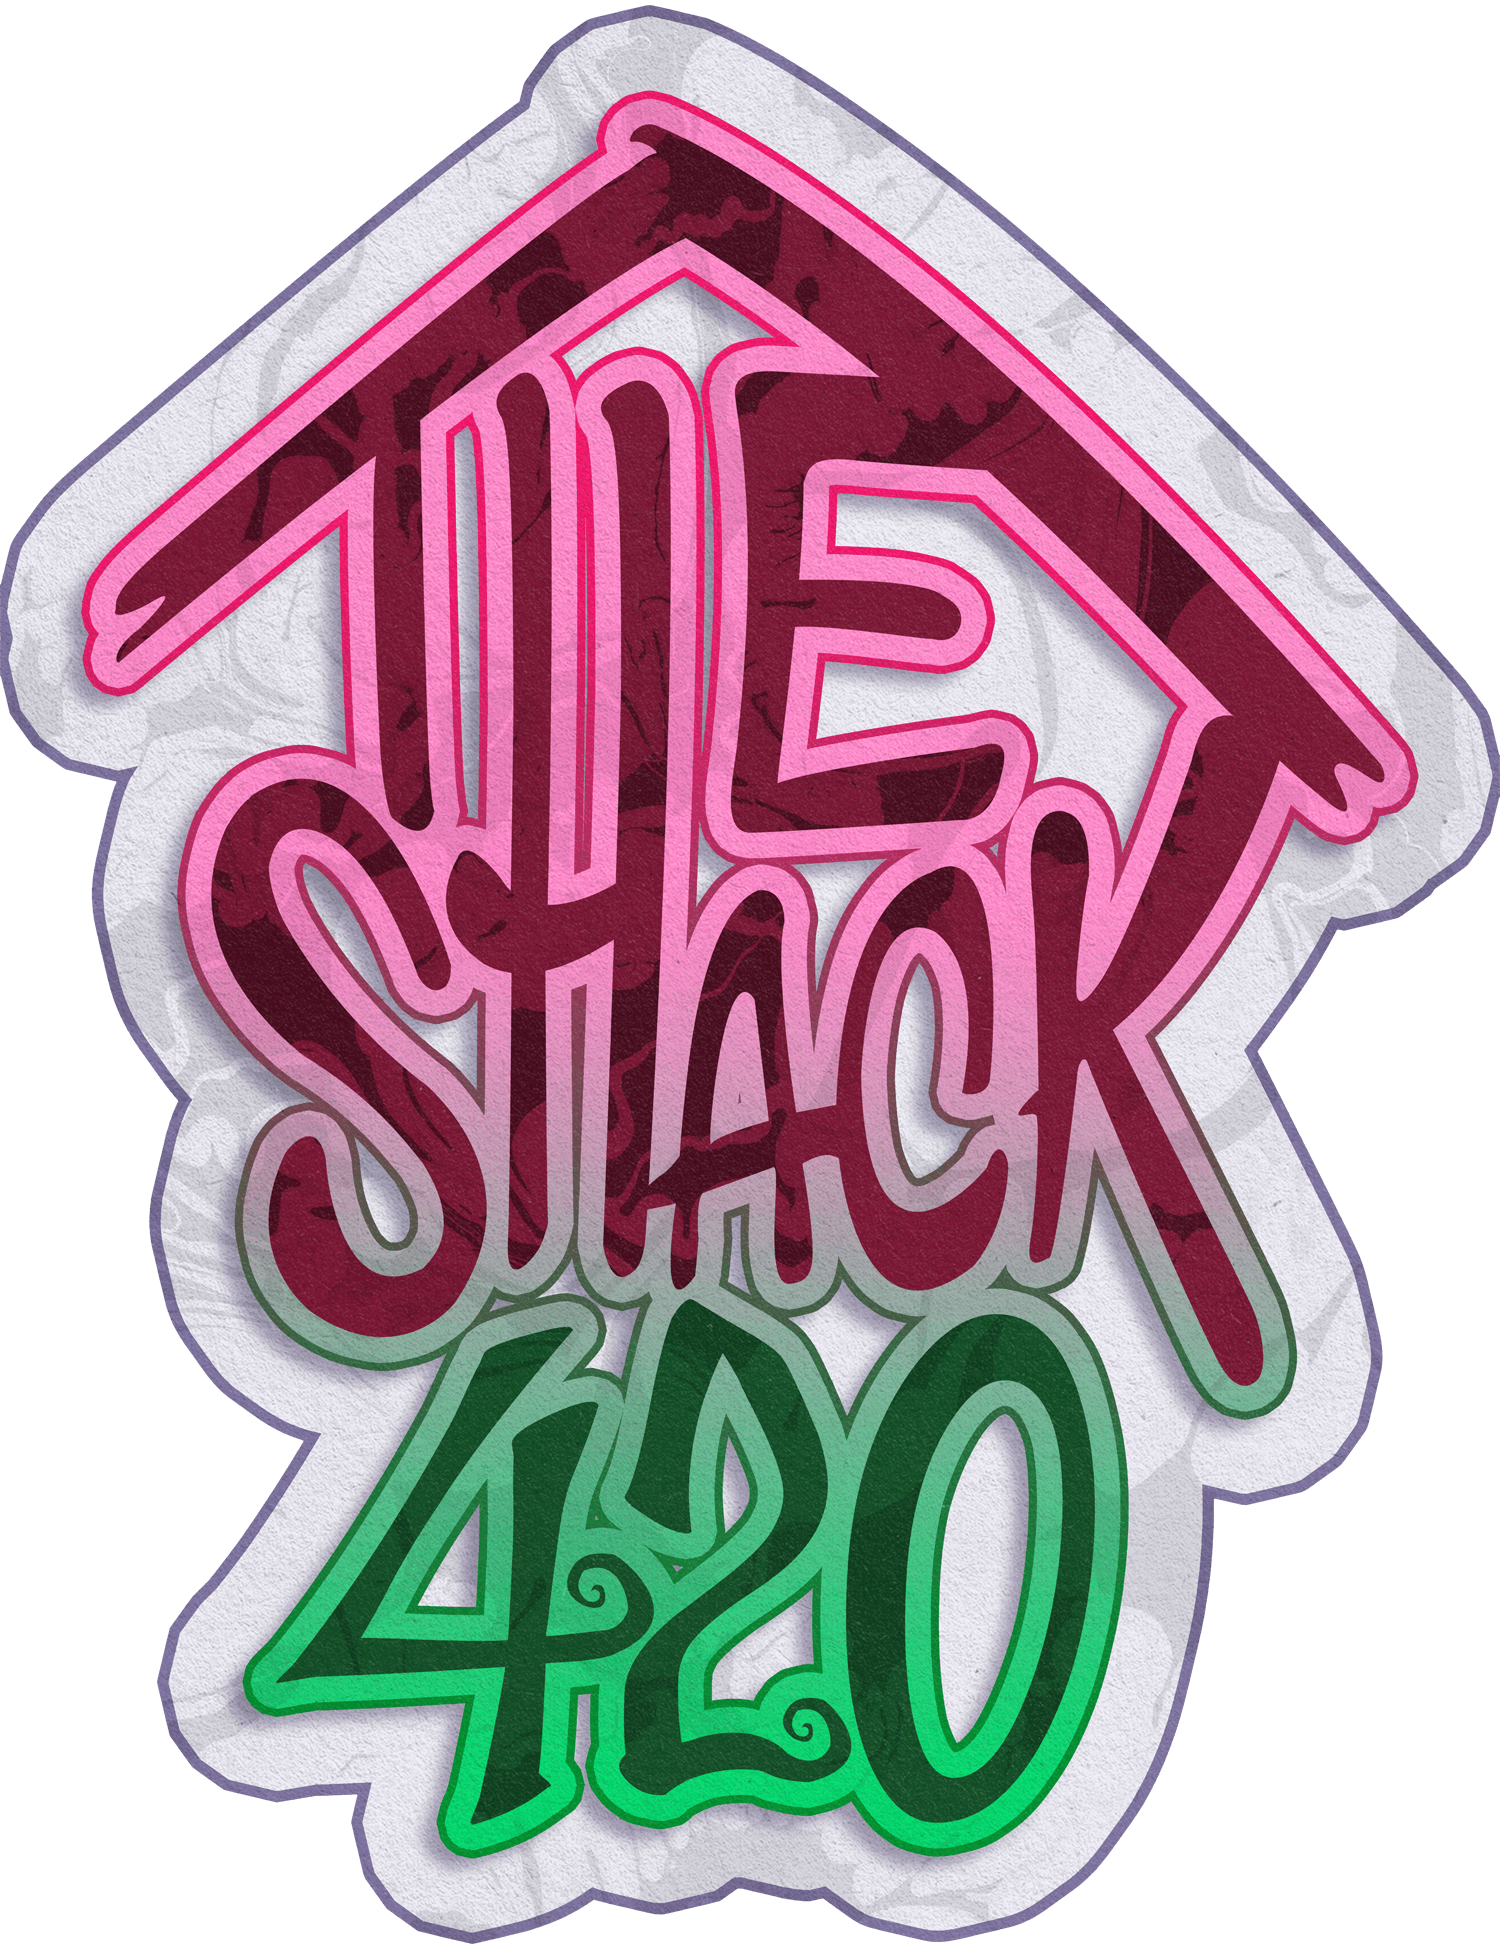 The Shack 420 logo